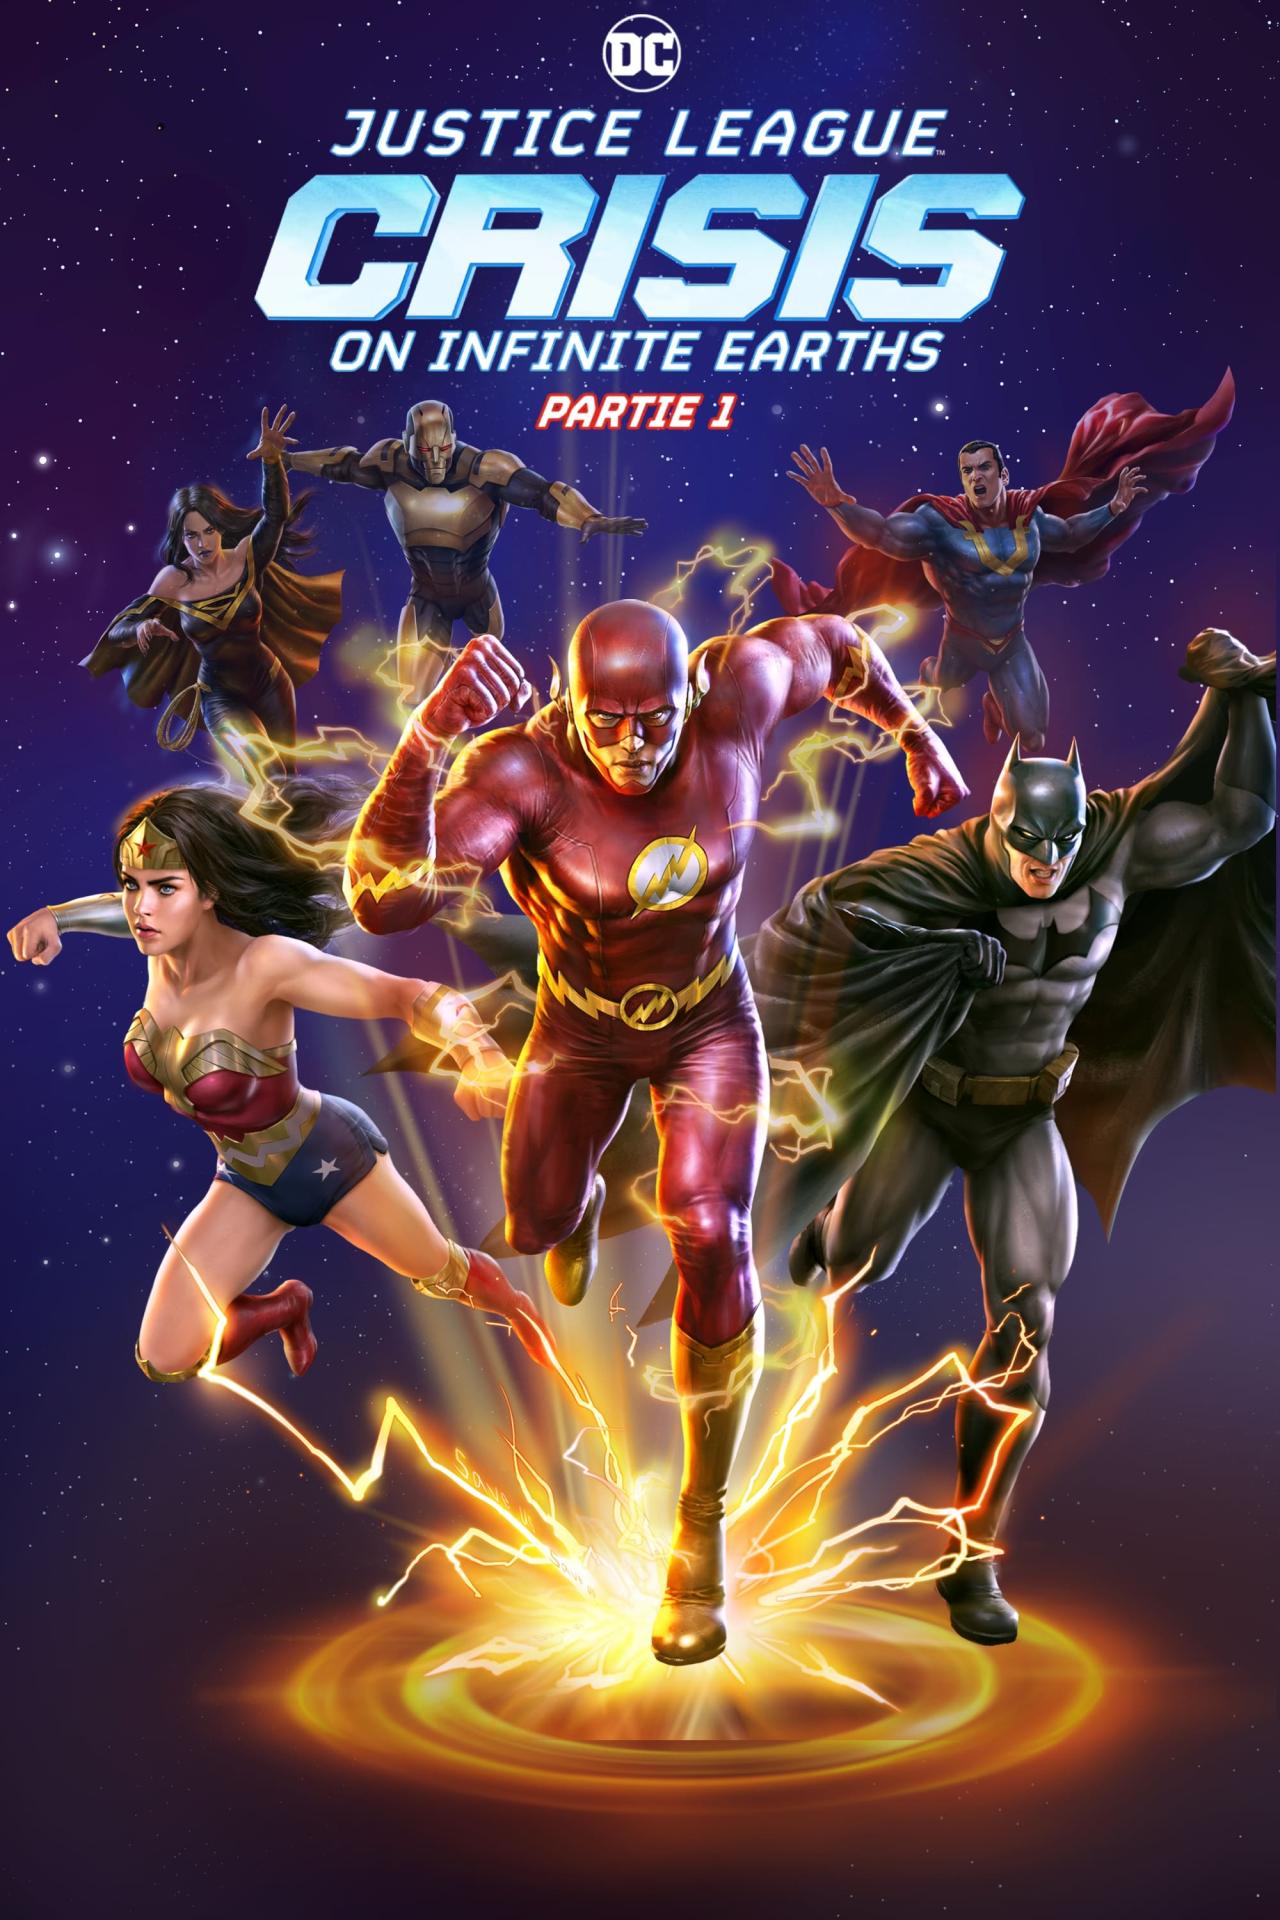 Justice League : Crisis on Infinite Earths Partie 3 est-il disponible sur Netflix ou autre ?